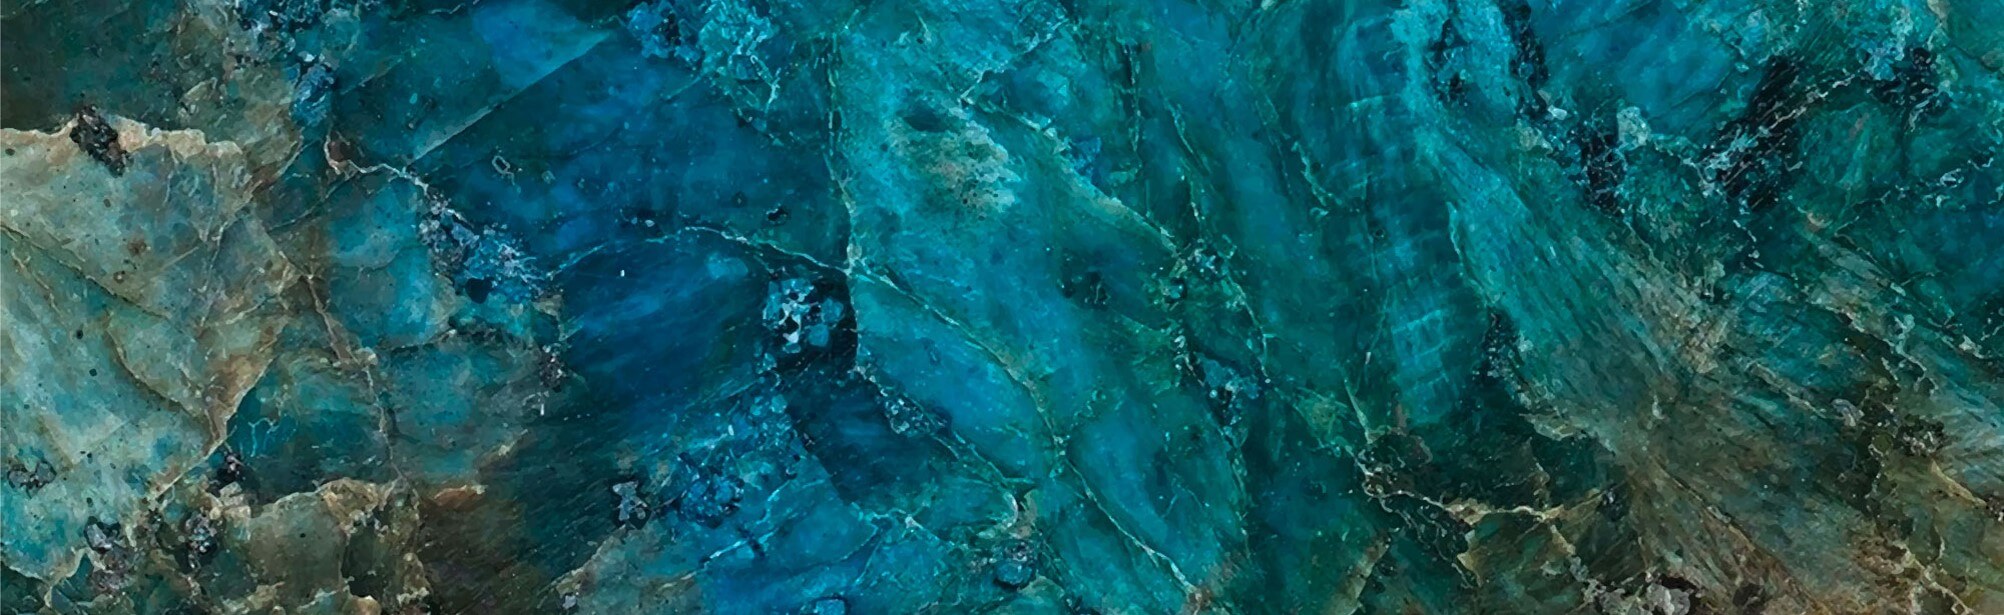 Blue Ocean Marble